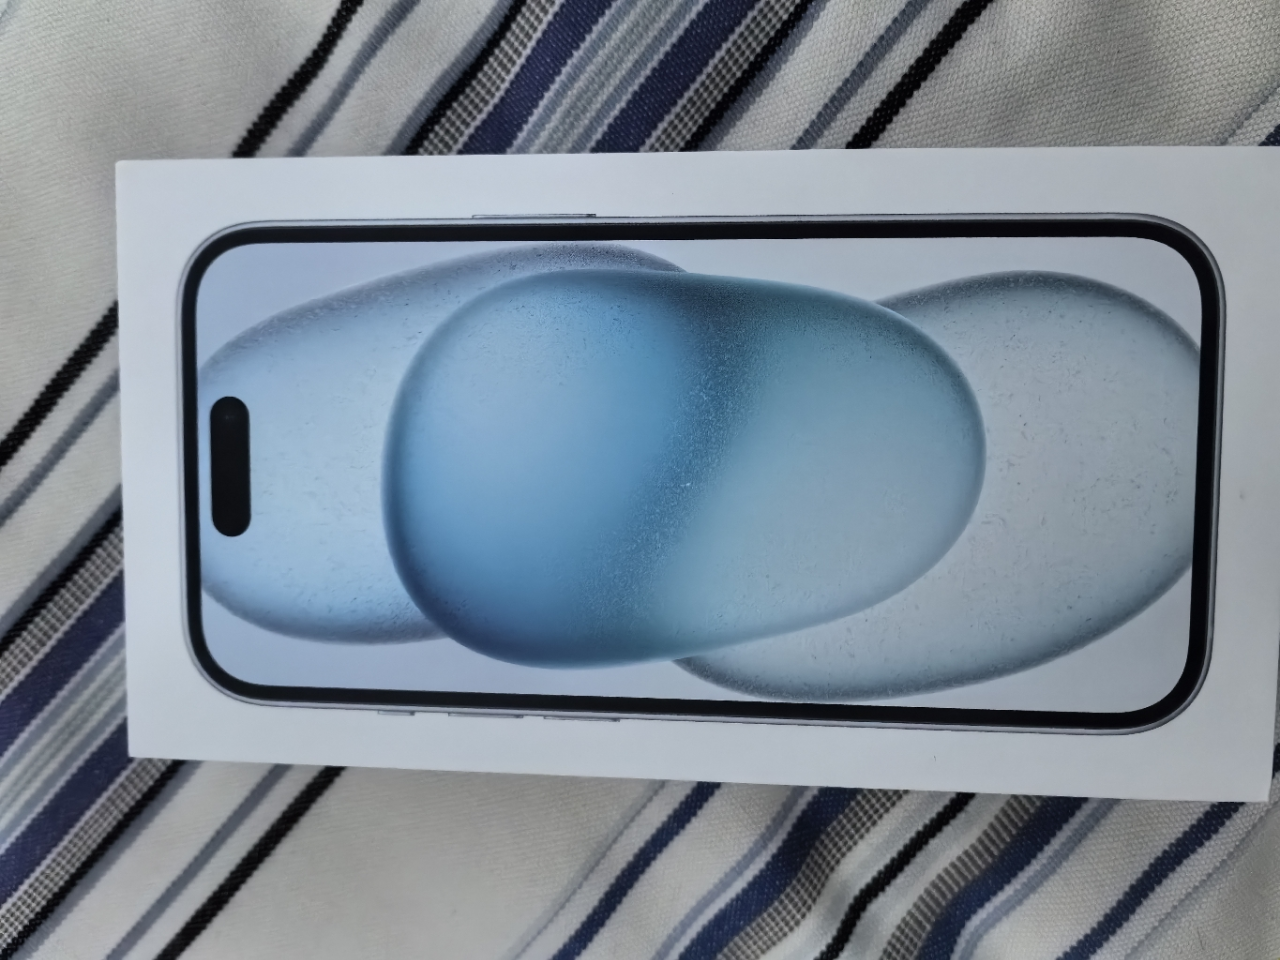 Apple iPhone 15 128G 蓝色 移动联通电信手机 5G全网通手机晒单图